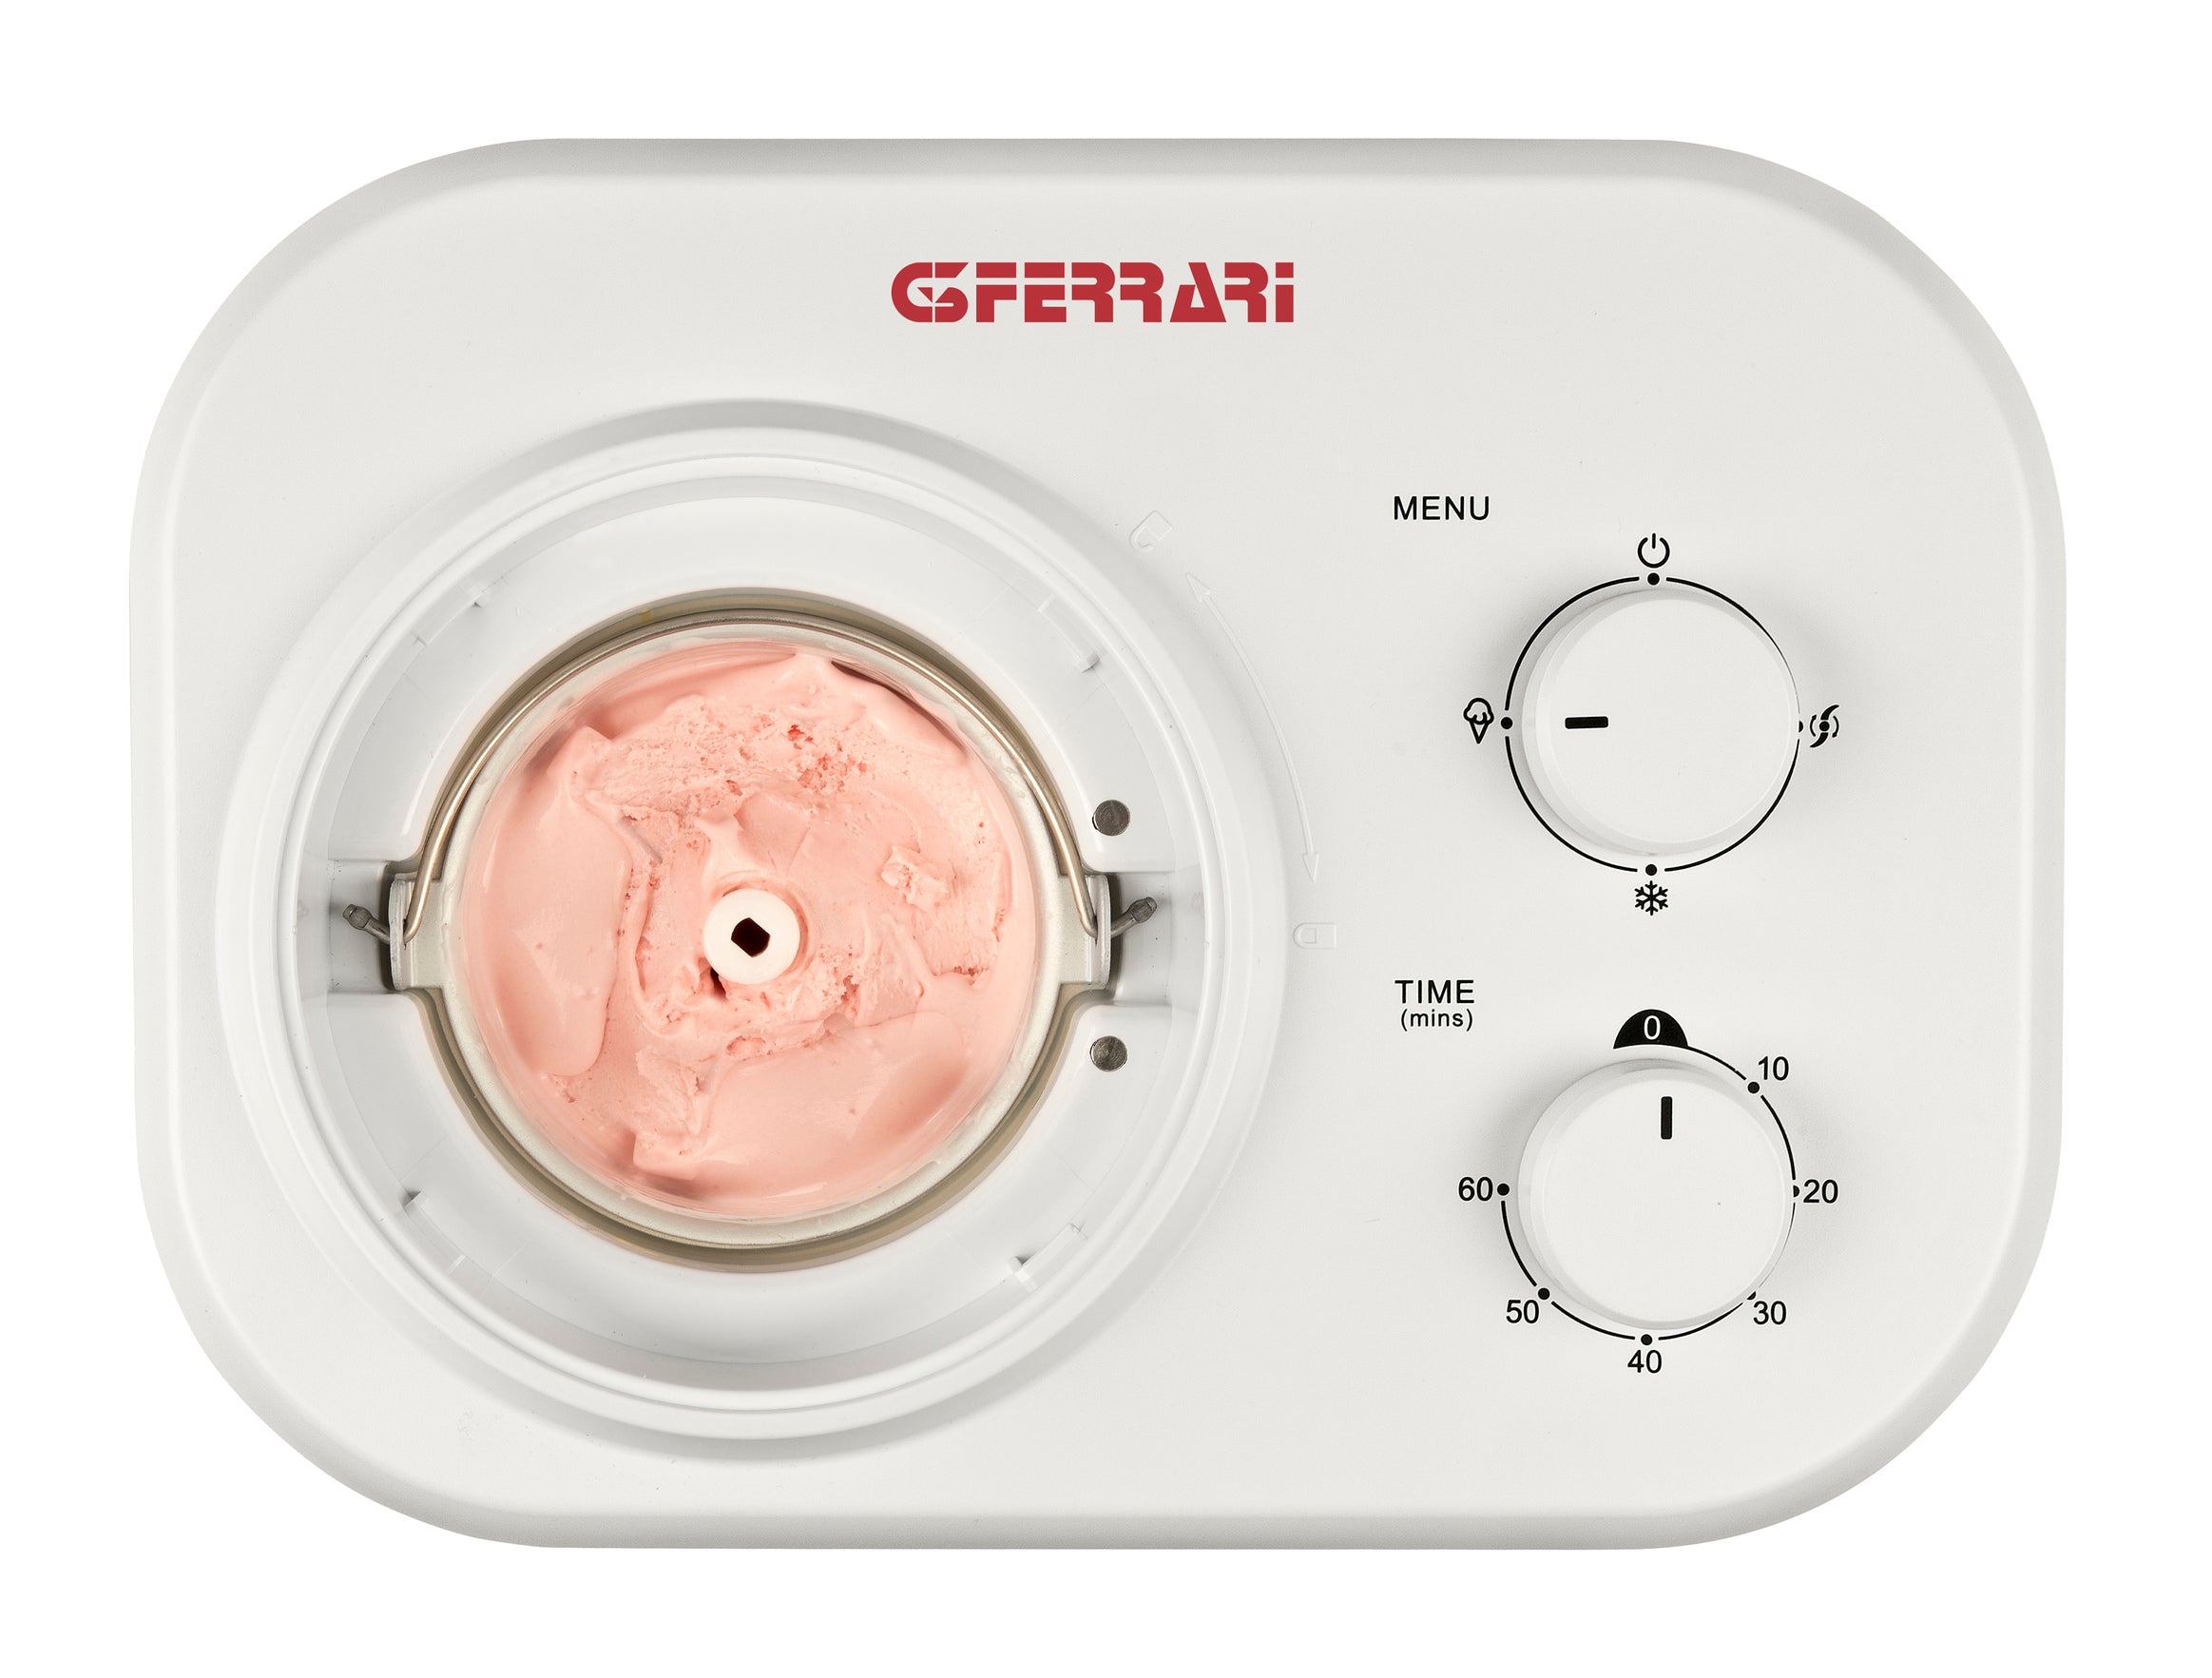 G3 Ferrari G20144 NEVE Krémes fagylalt vagy ízletes sorbet készítő, kevesebb, mint 60 perc alatt